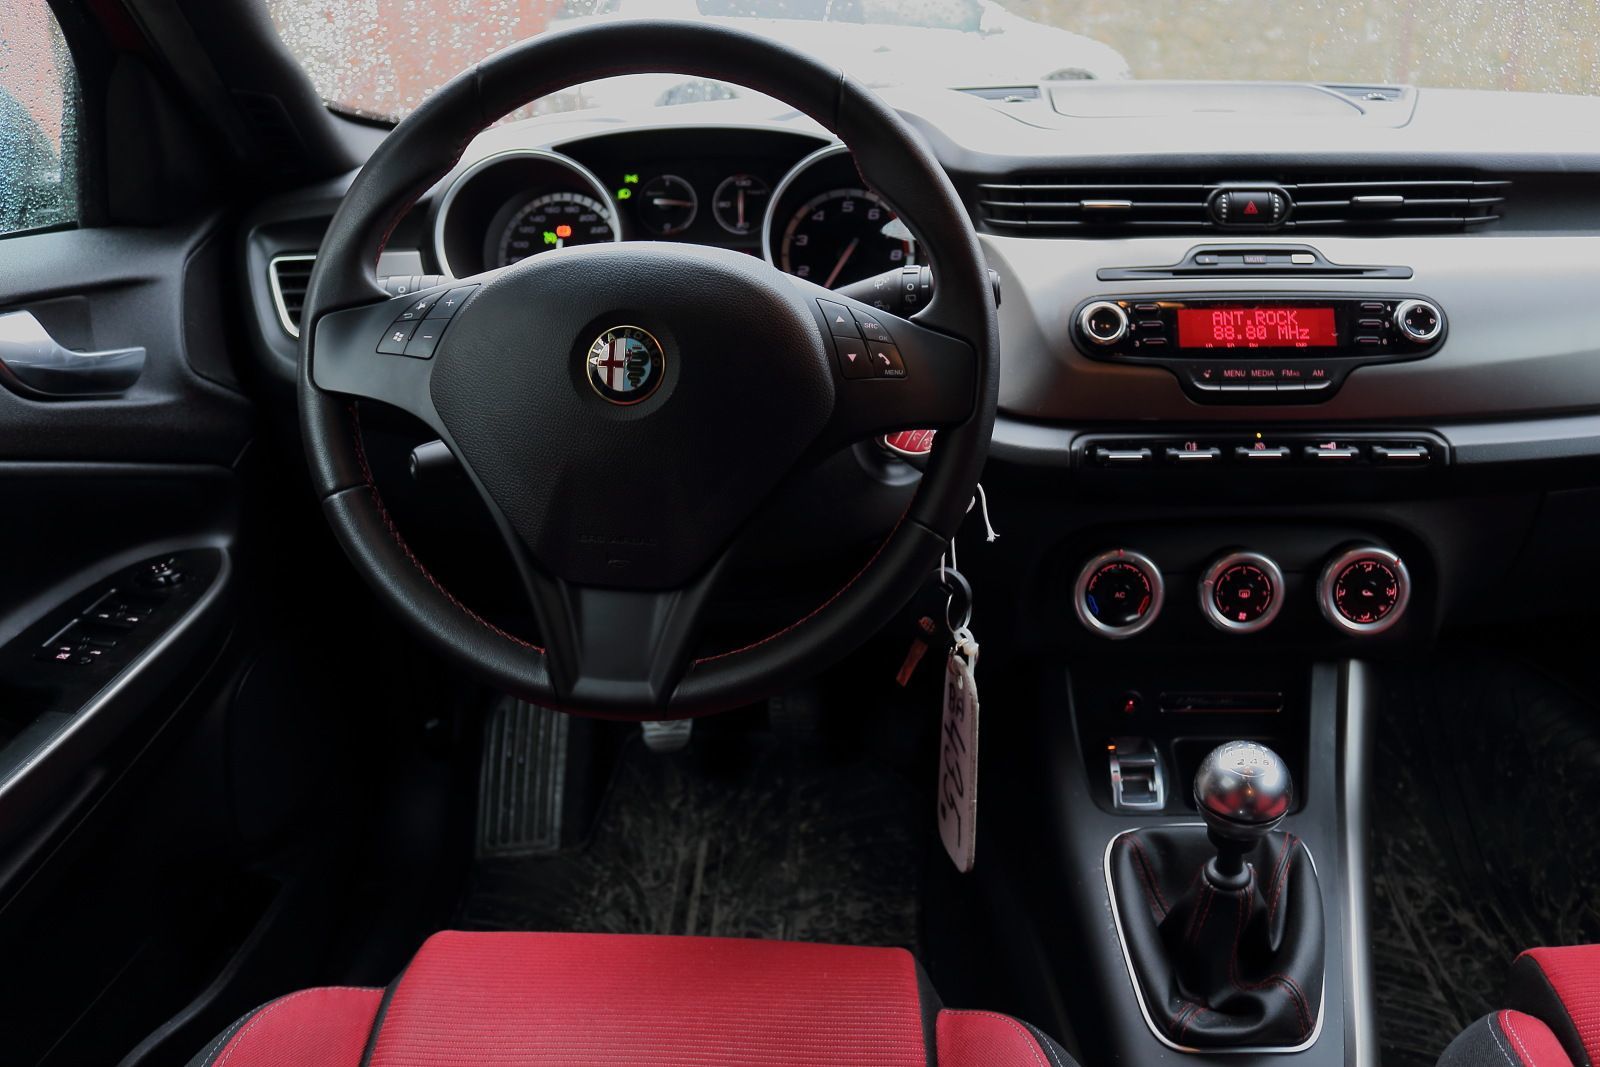 Topspeed.sk test jazdenky Alfa Romeo Giulietta